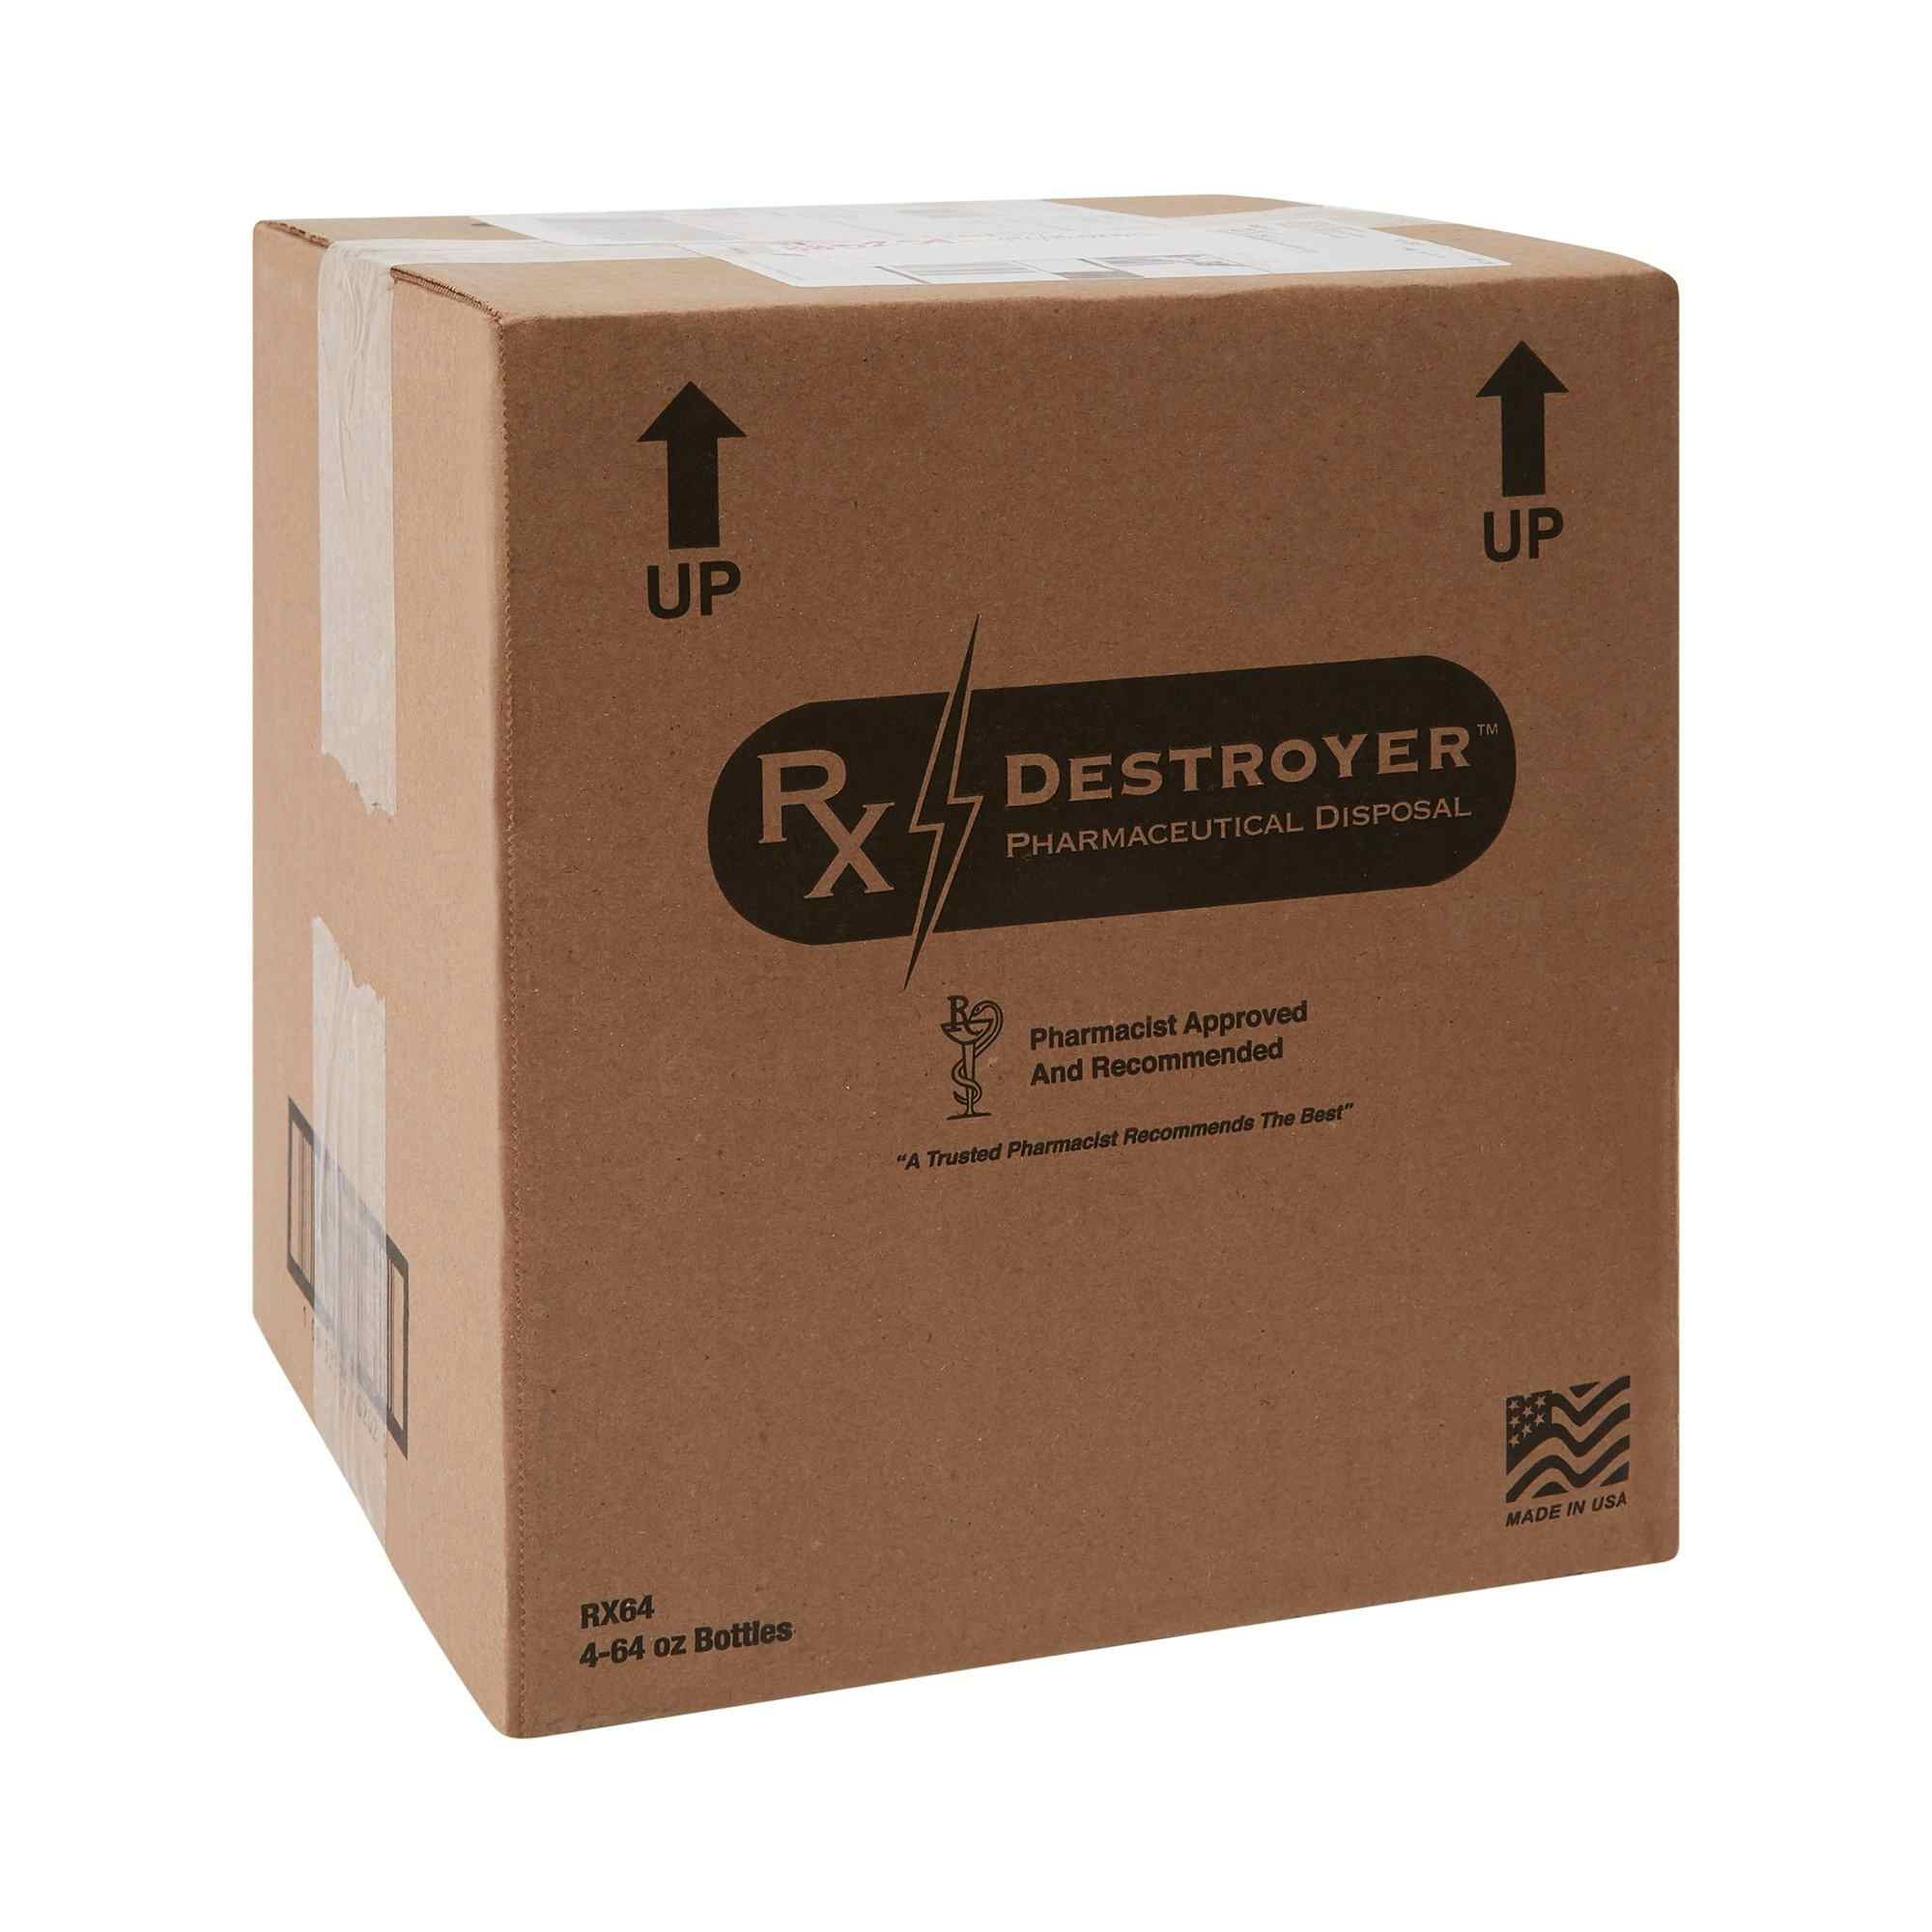 Rx Destroyer Drug Disposal System